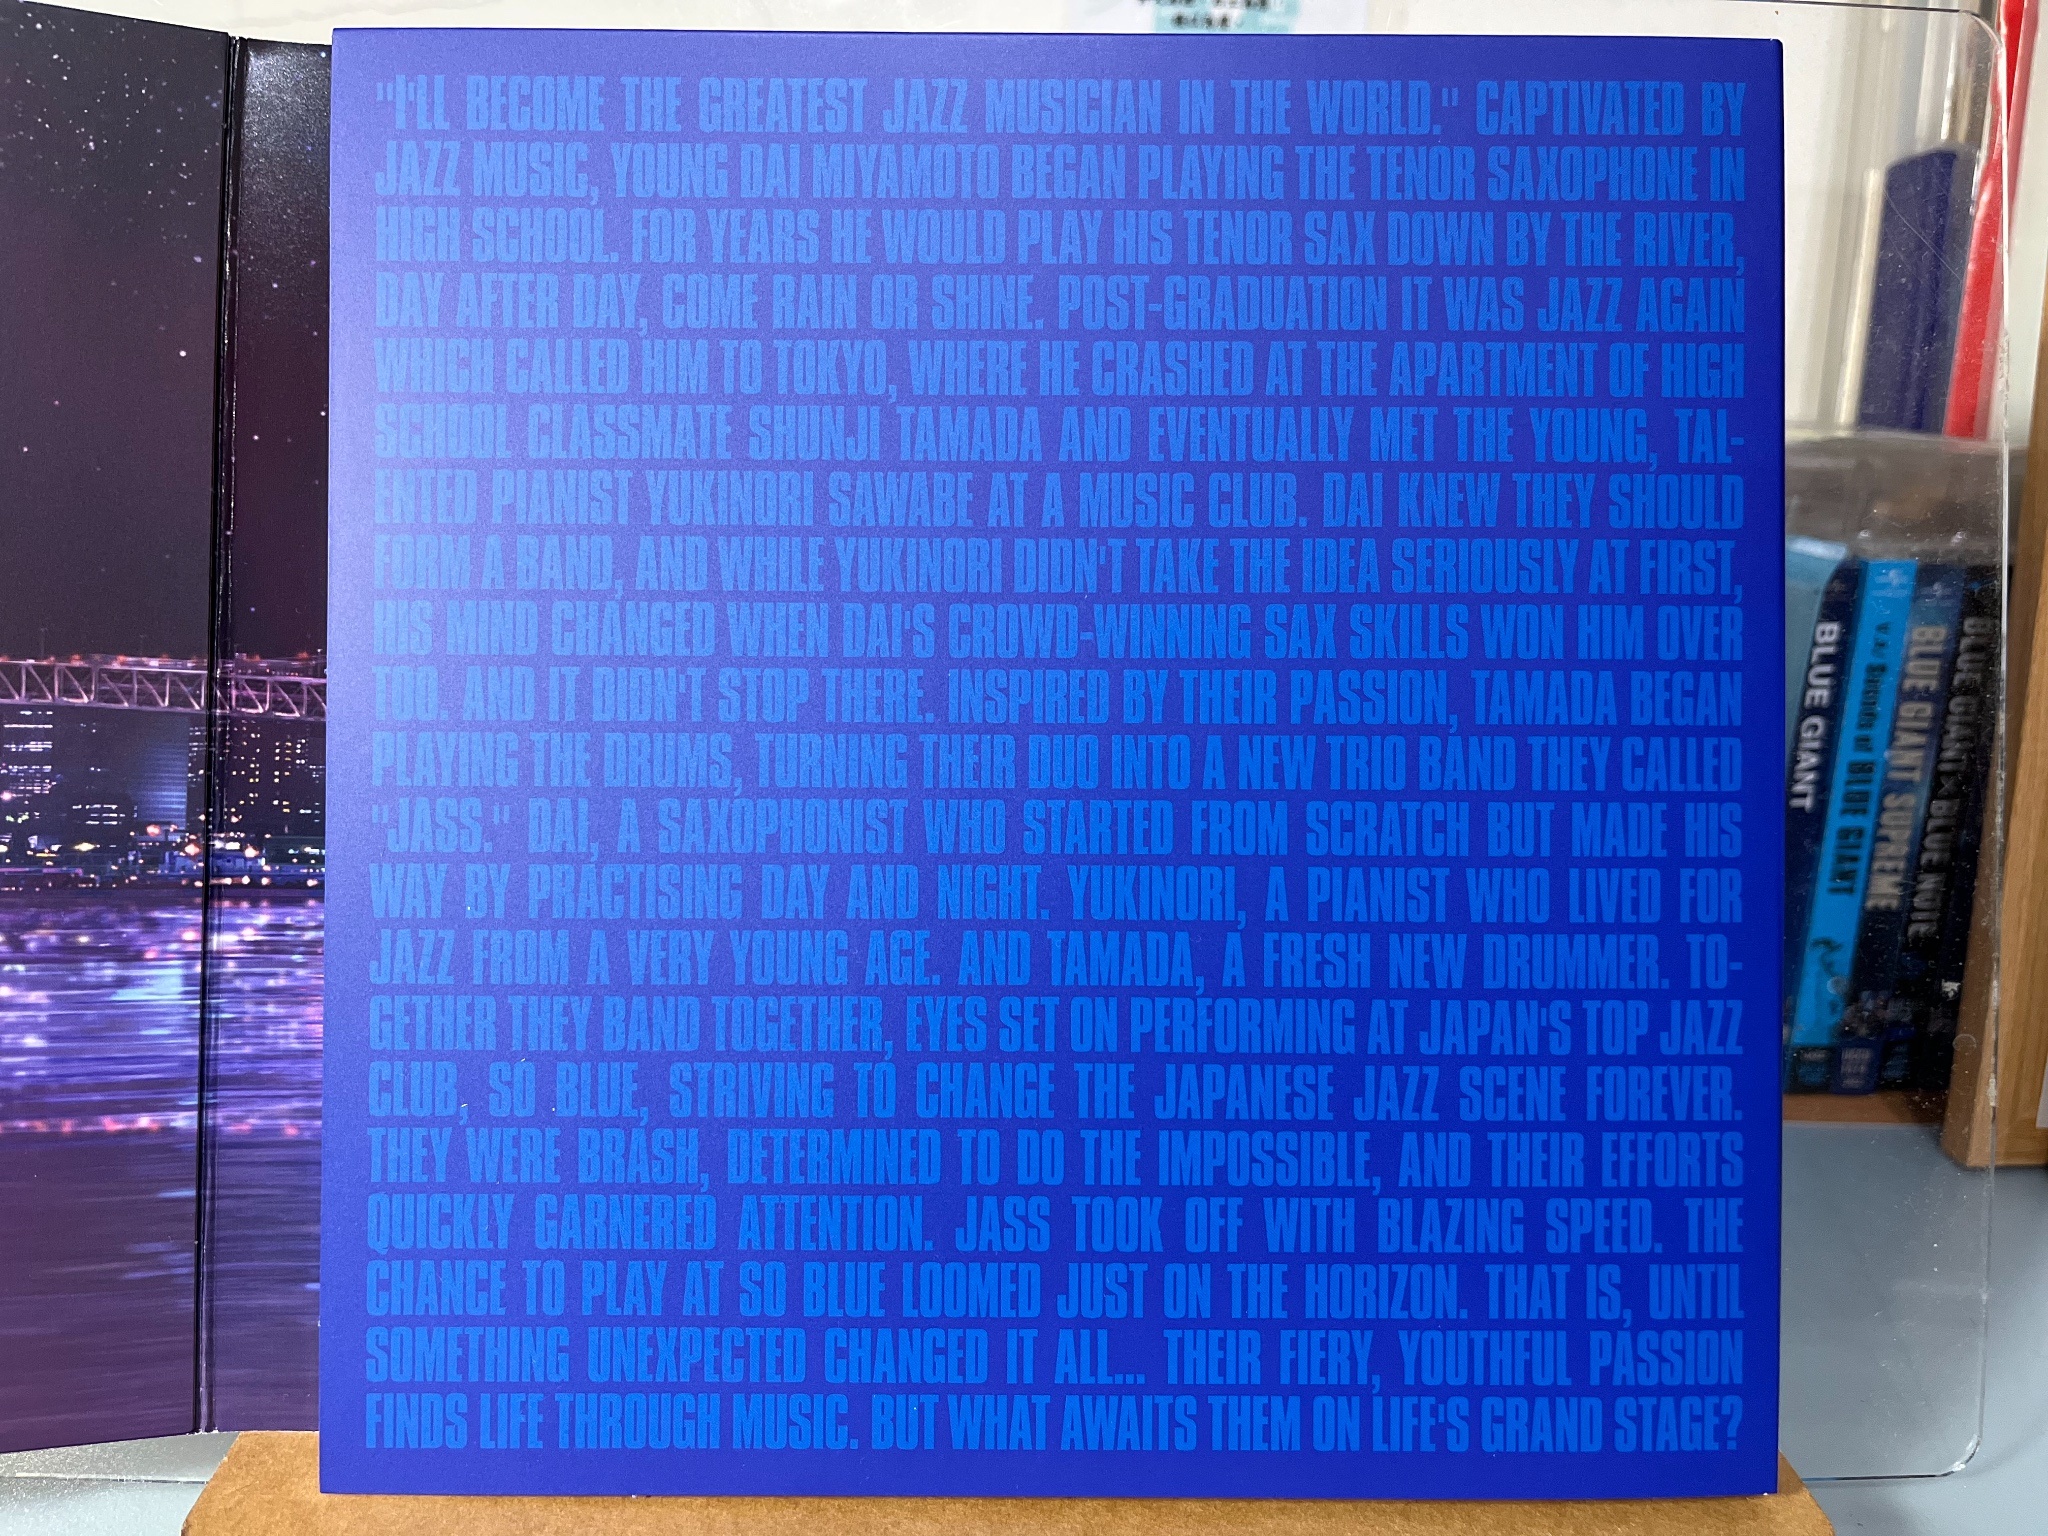 開箱】藍色巨星Blu-ray限定盤（Blu-ray2枚組+特典CD）【初回生産限定版 